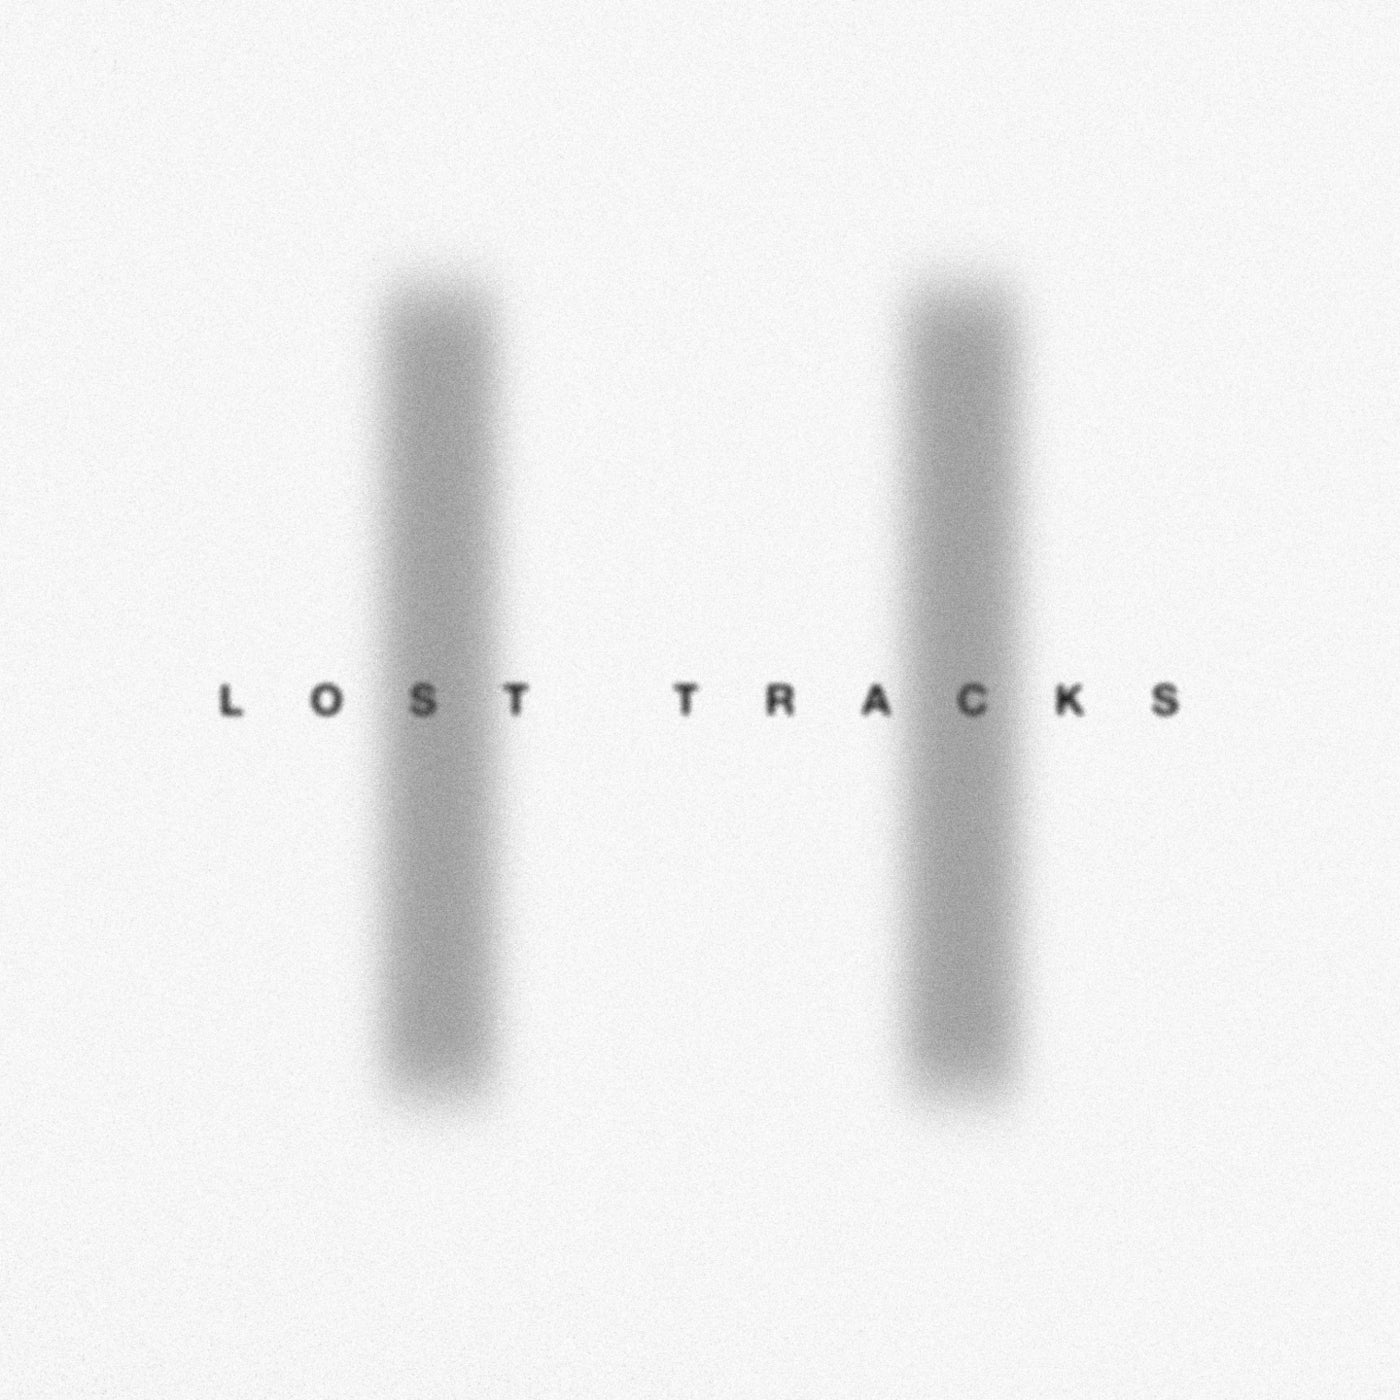 Lost tracks II